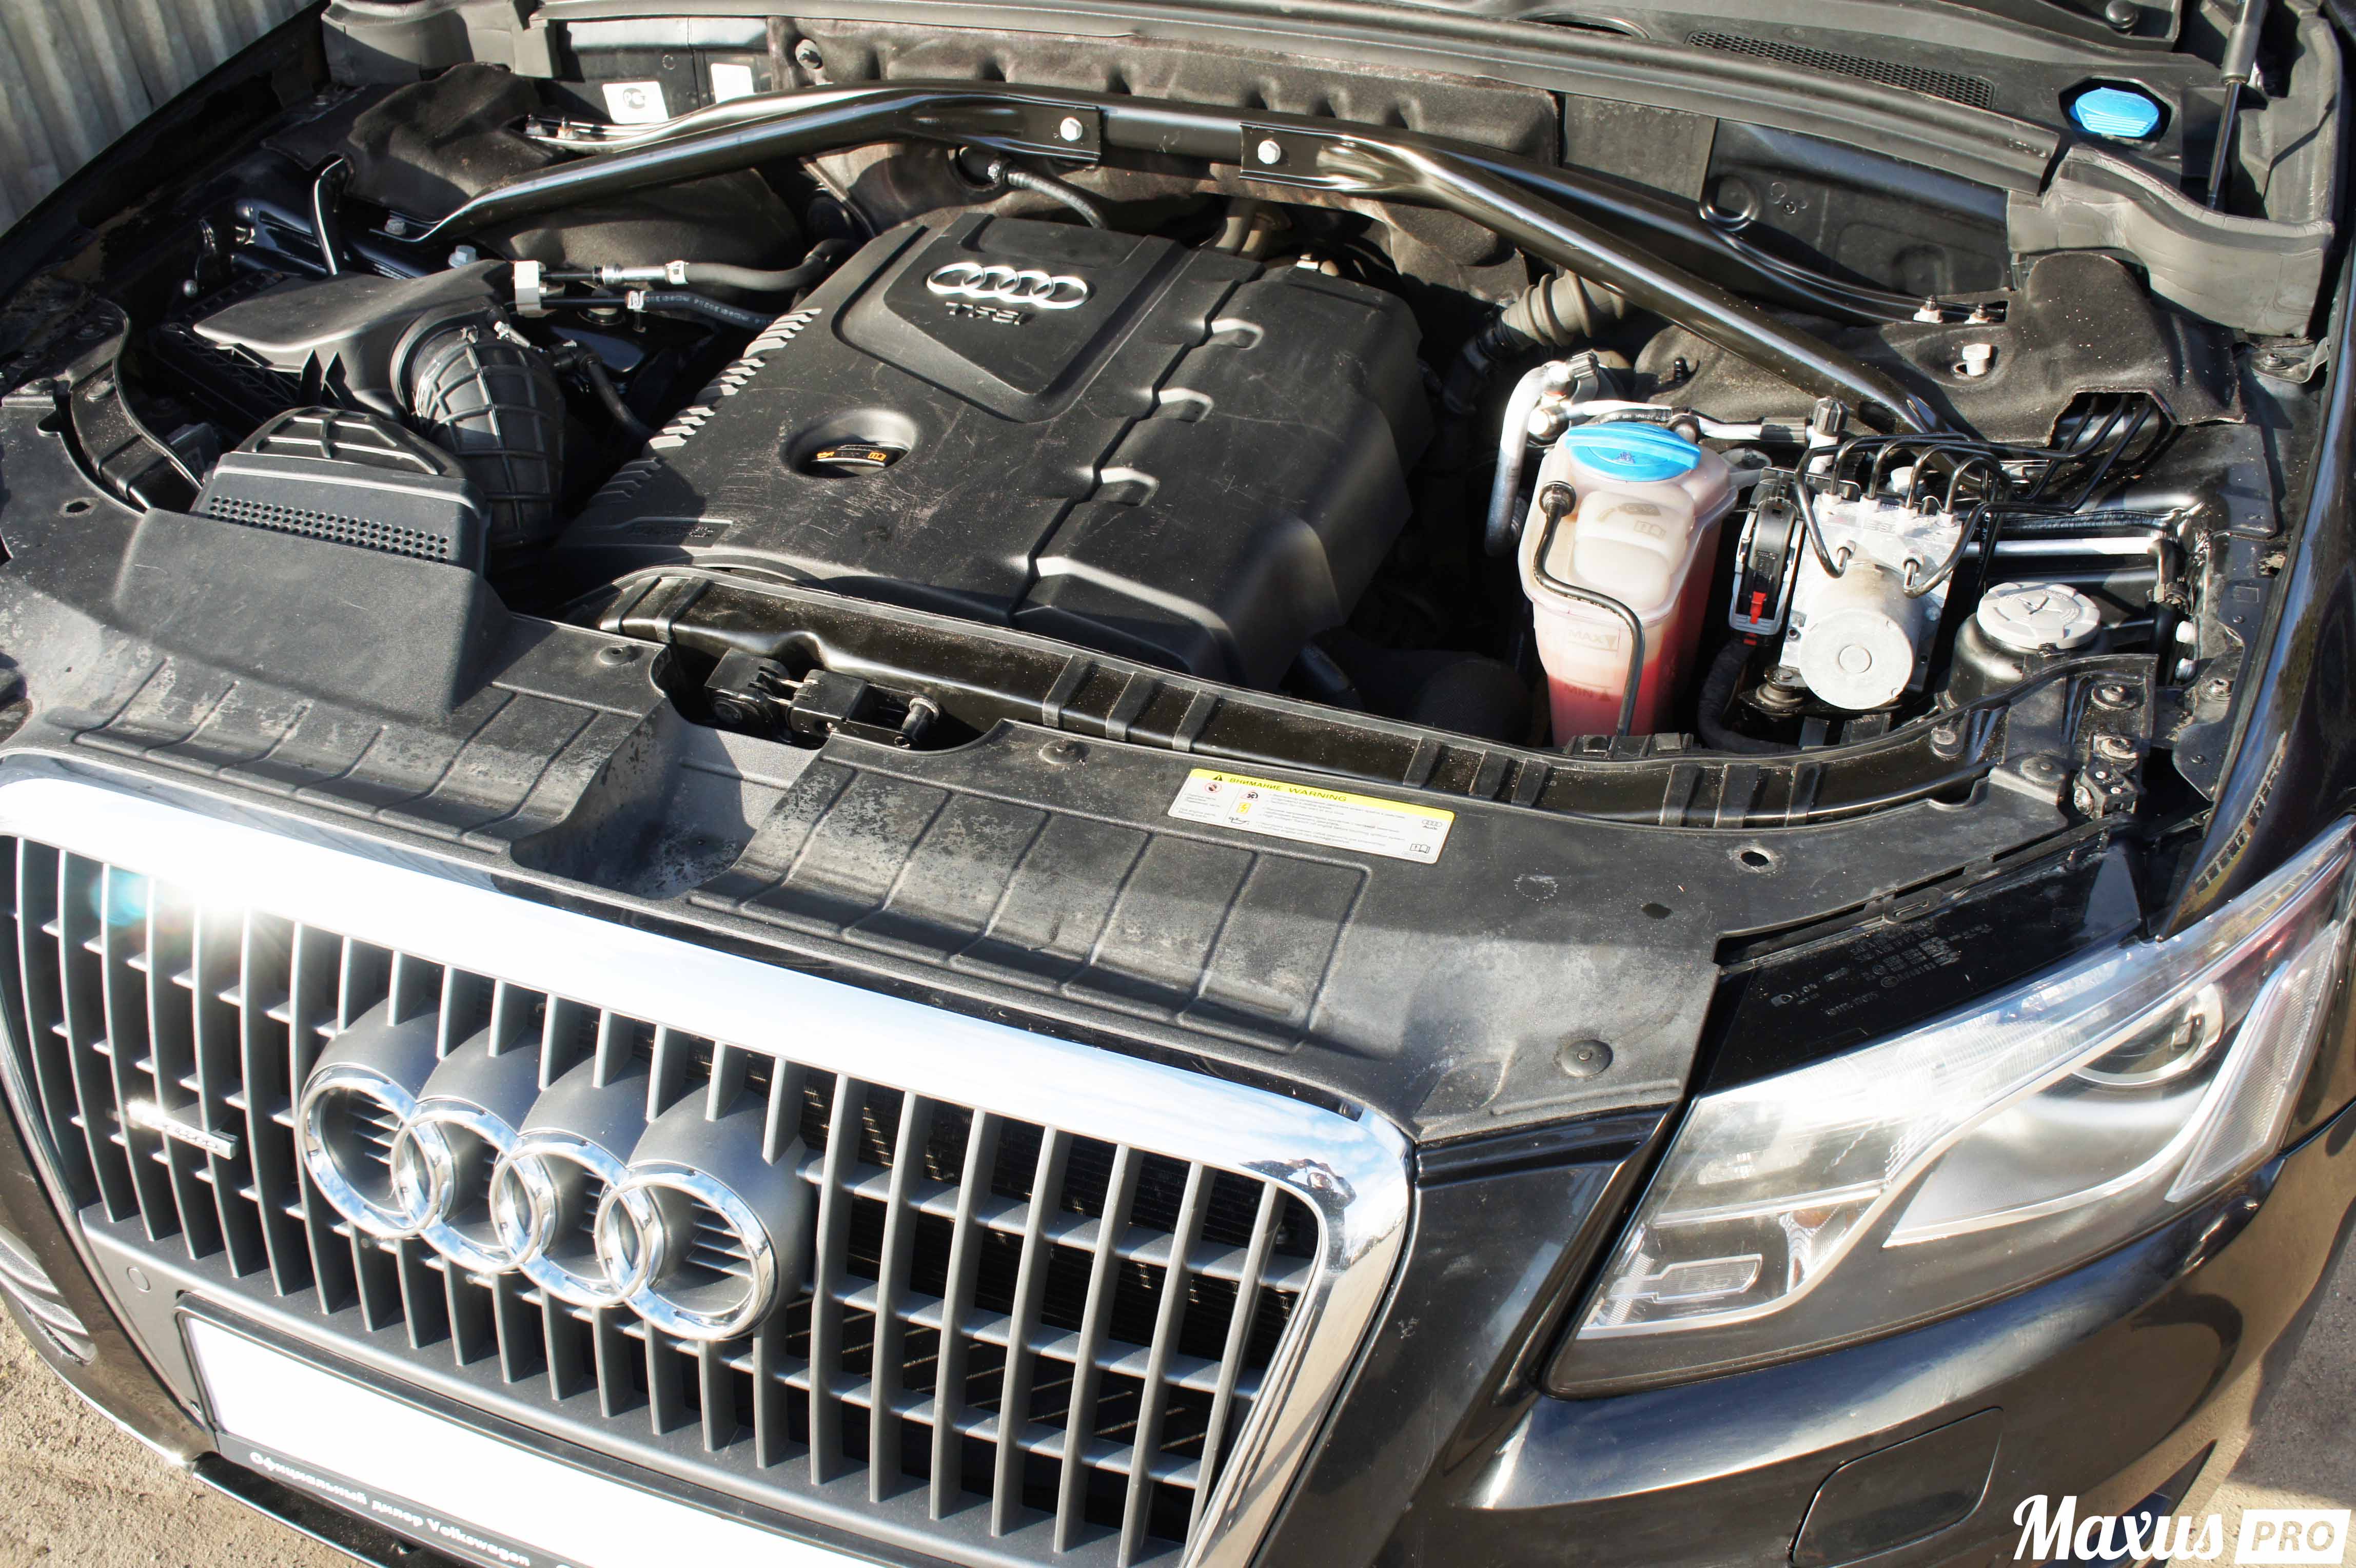 Замена масла в Audi Q5